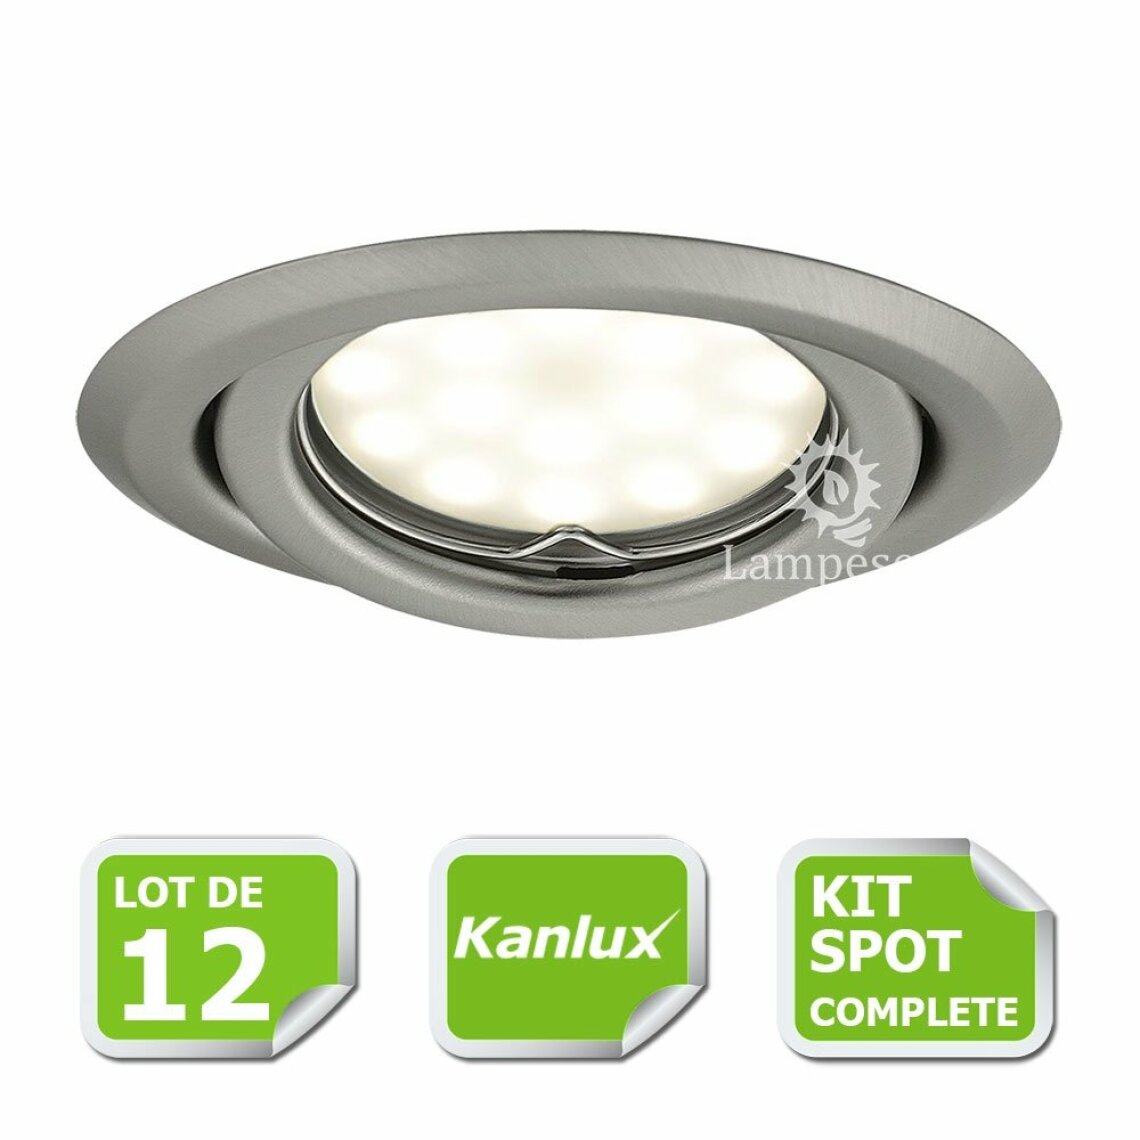 Kanlux - Kit complete de 12 Spots encastrable chrome mat orientable marque Kanlux avec GU10 LED 5W 3000K blanc chaud - Boîtes d'encastrement